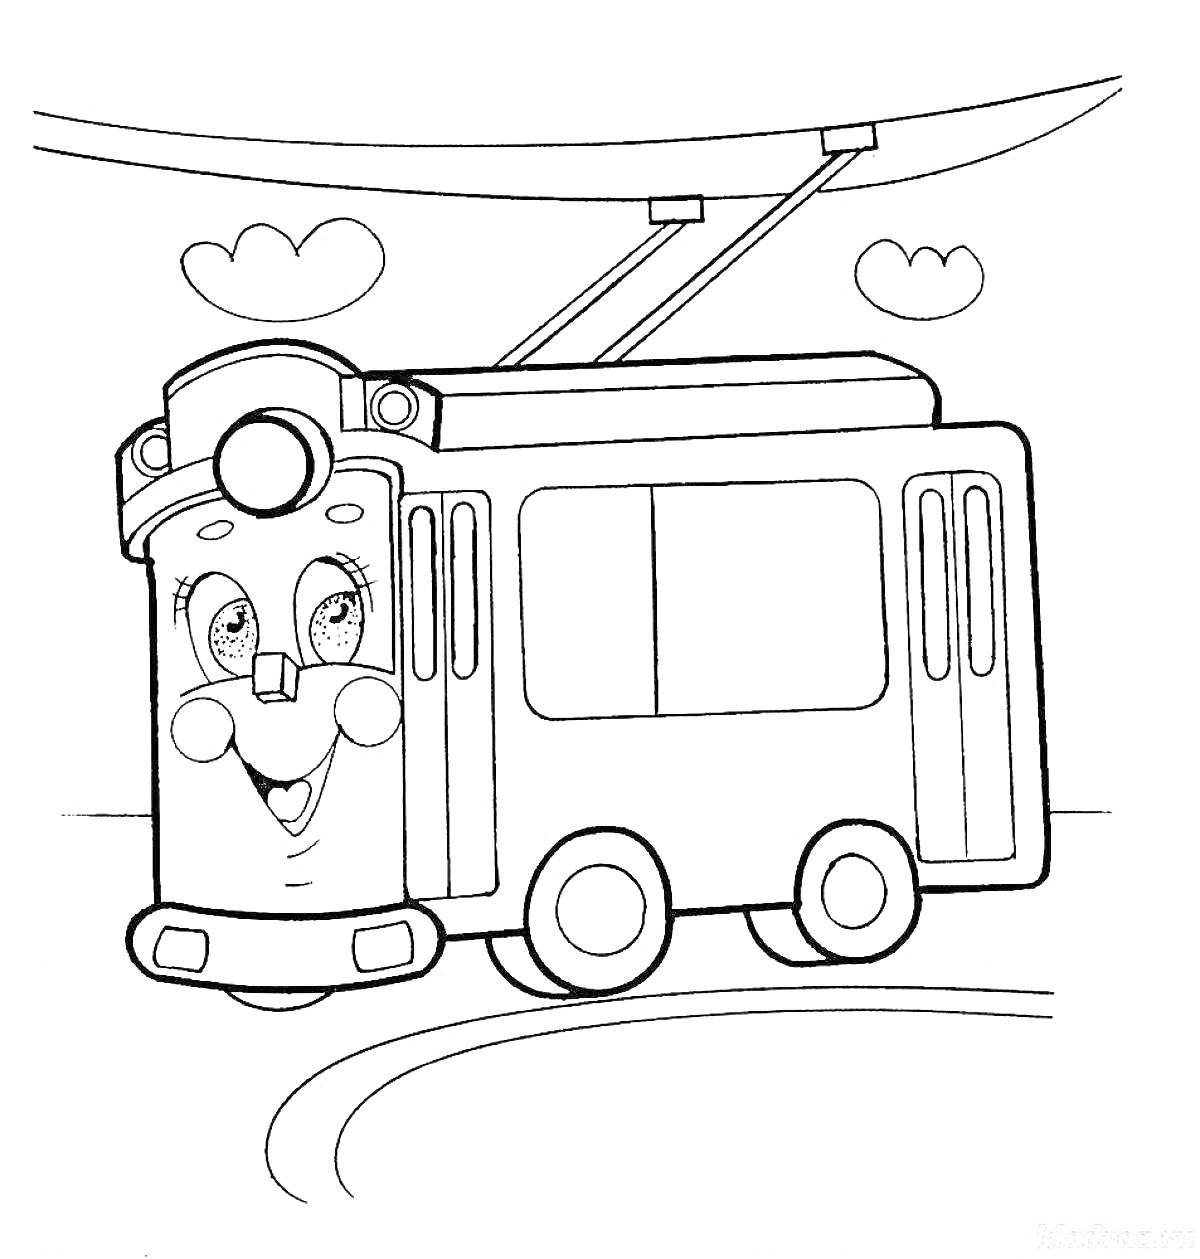 Веселый троллейбус с улыбающимся лицом, провода, облака